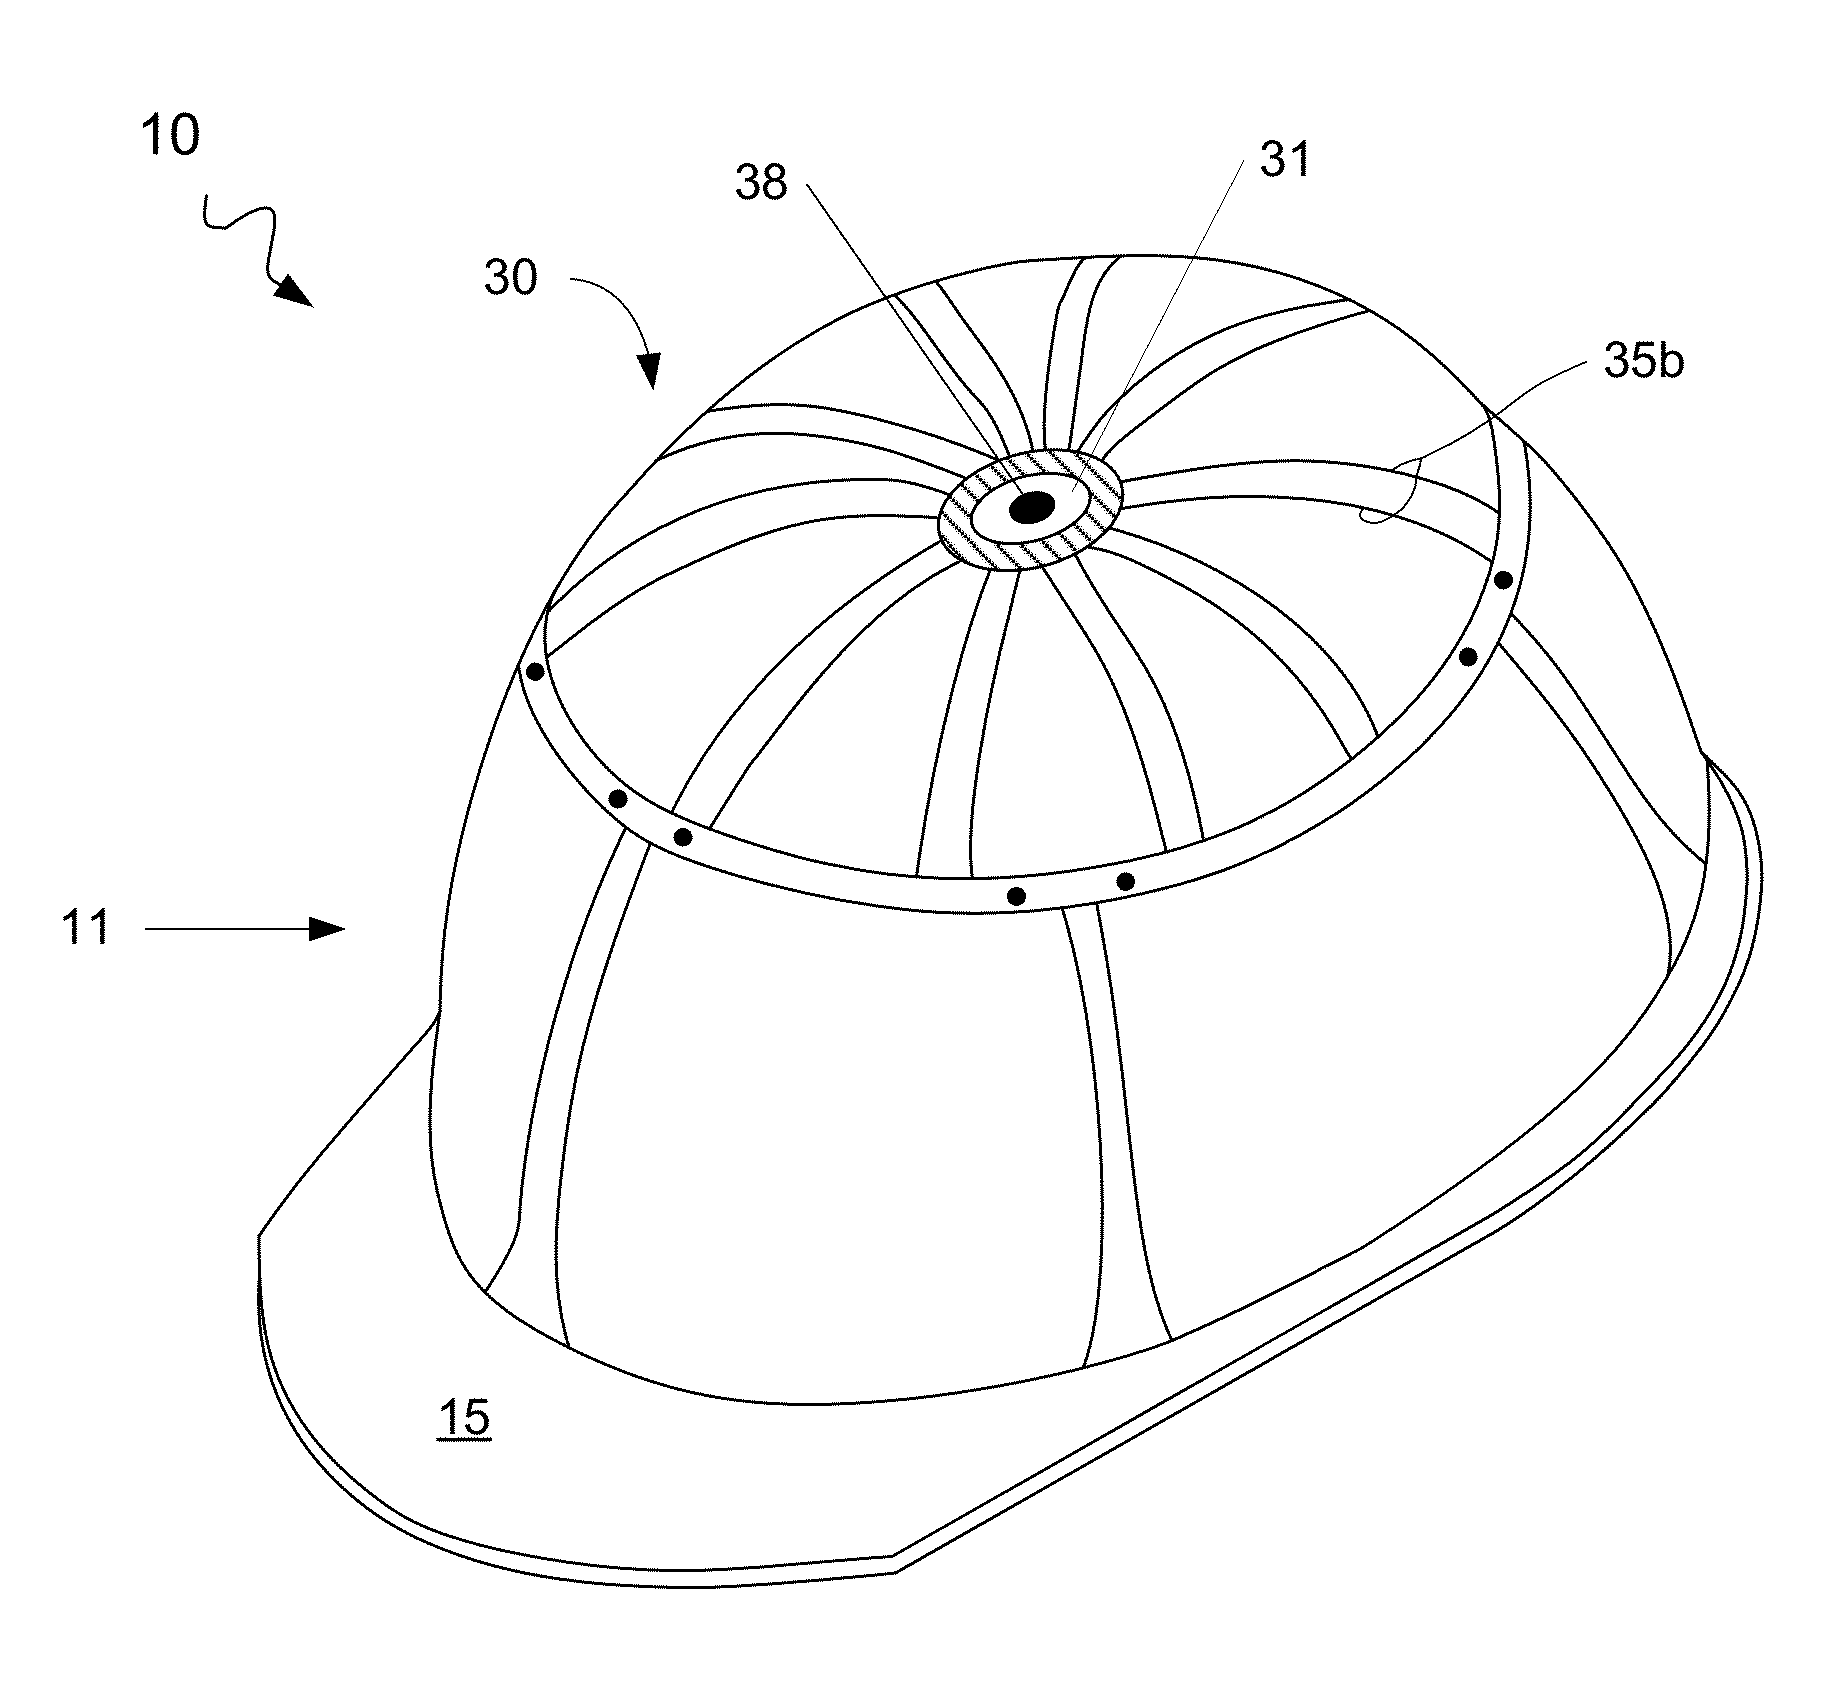 Headgear with fan assembly device